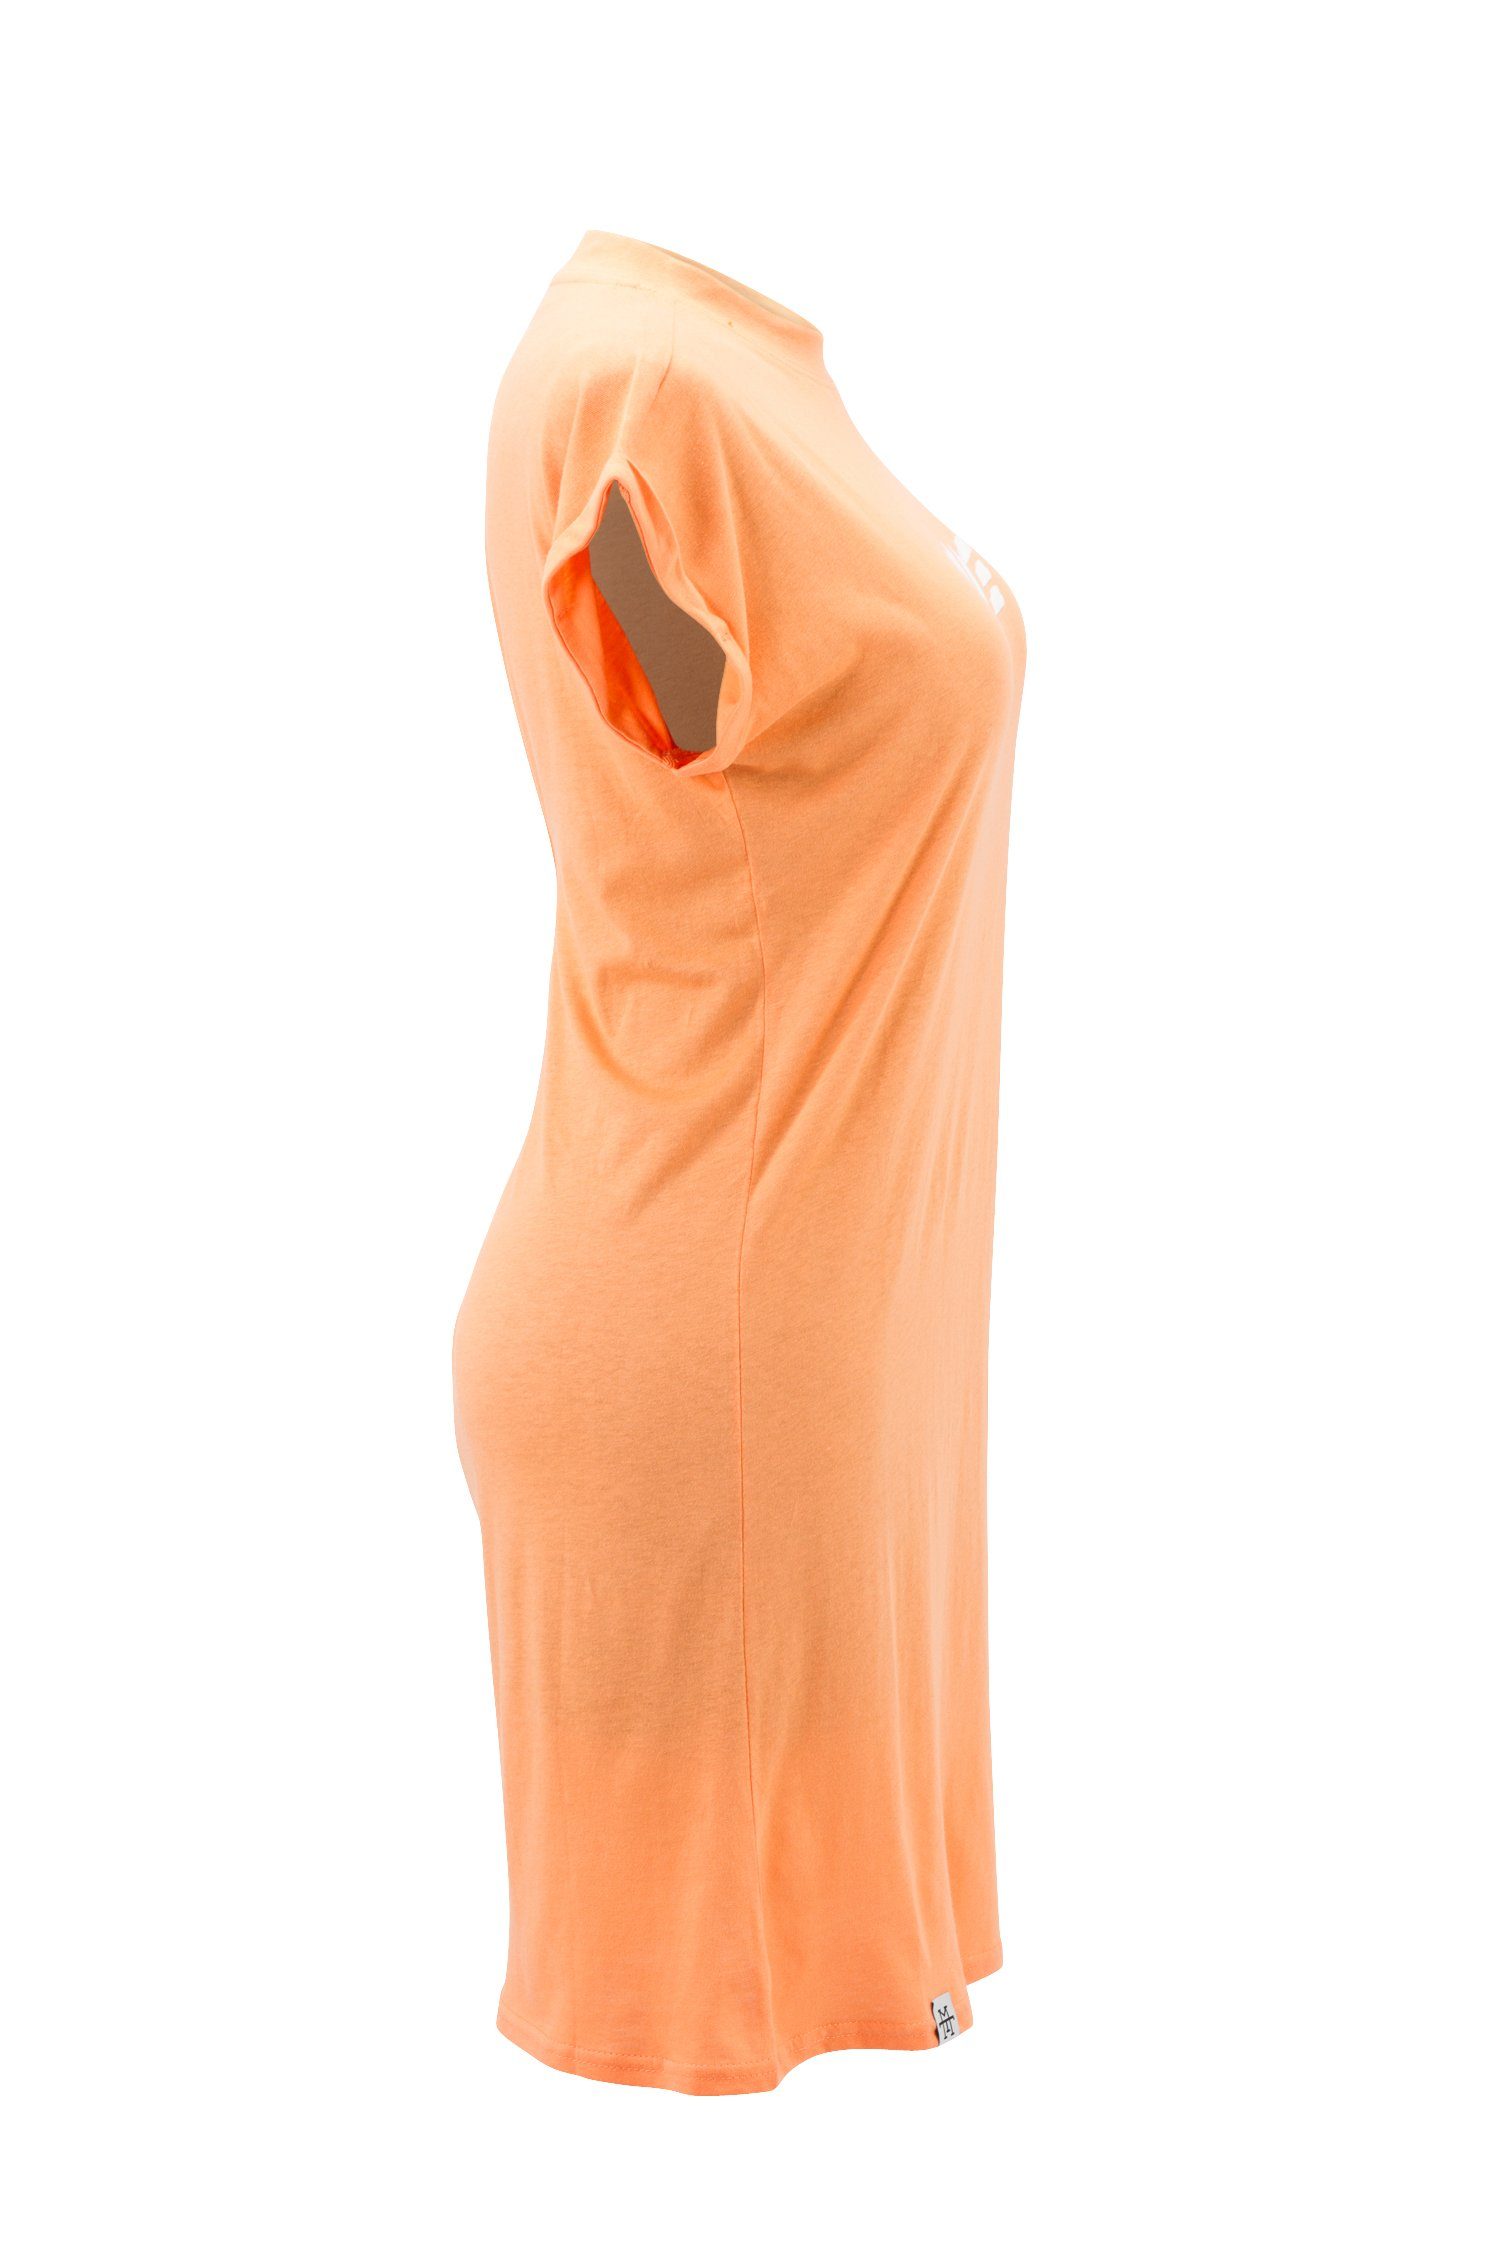 Manufaktur13 Shirtkleid Kleid, Peach T-Shirt - Summer Tee 100% Dress Sommerkleid, Jerseykleid Baumwolle